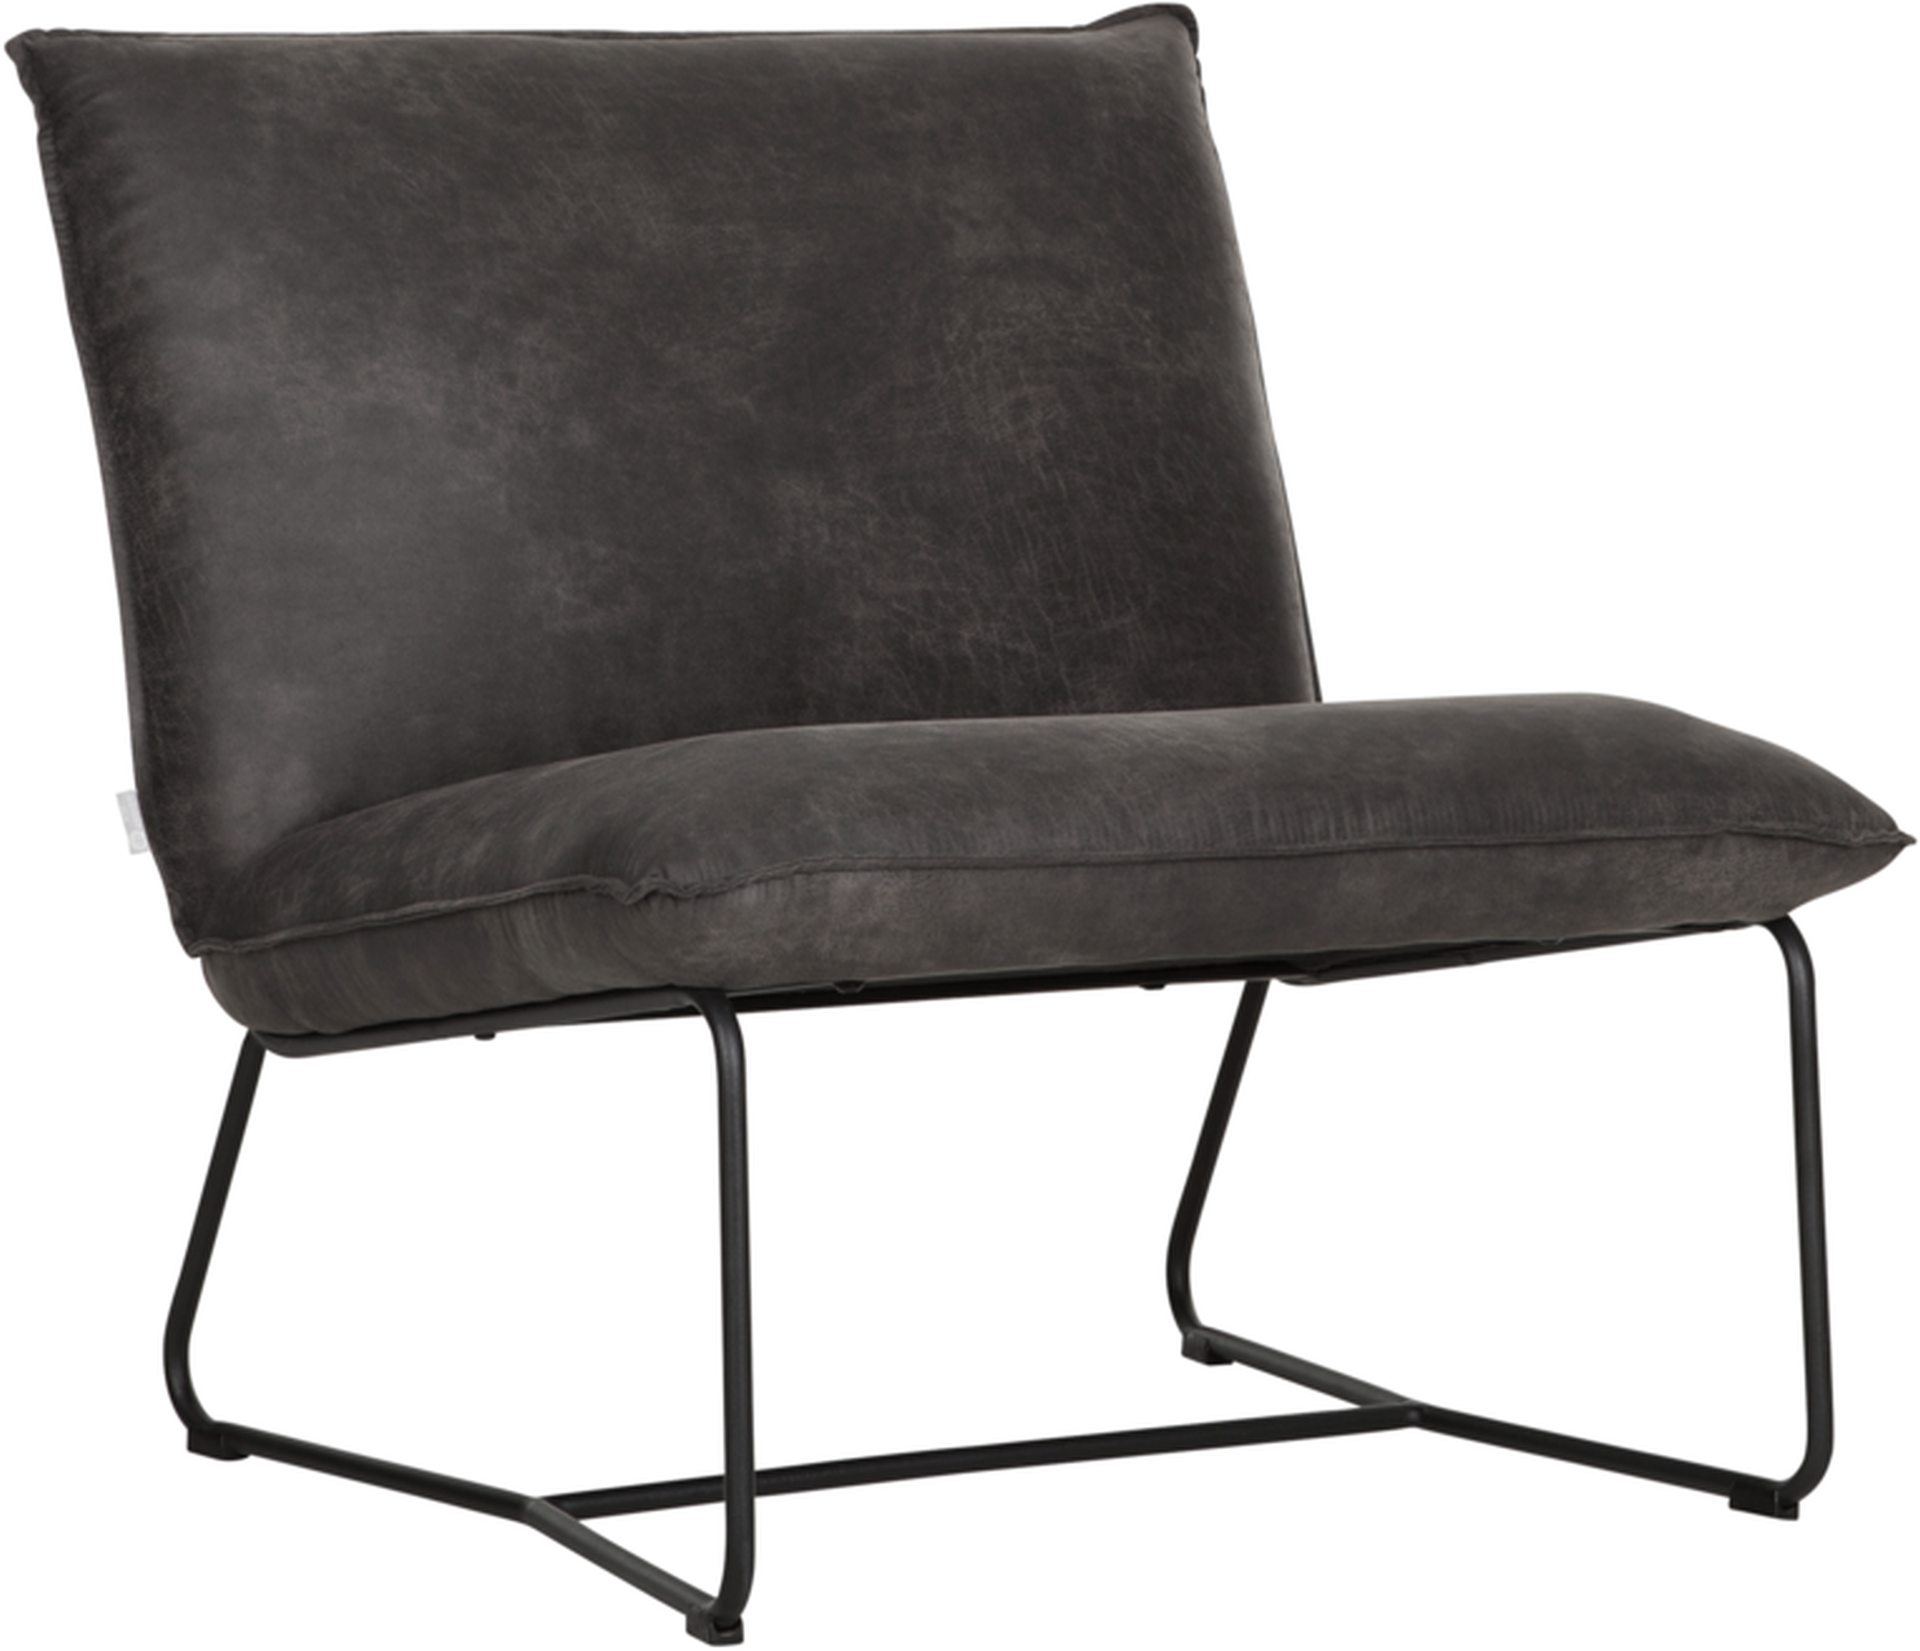 Der bequeme Sessel Delaware überzeugt mit seinem modernem Design.Gefertigt wurde er aus recyceltem Leder, welches einen Anthrazit Farbton besitzt. Das Gestell des Sessels ist aus Metall und ist Schwarz.